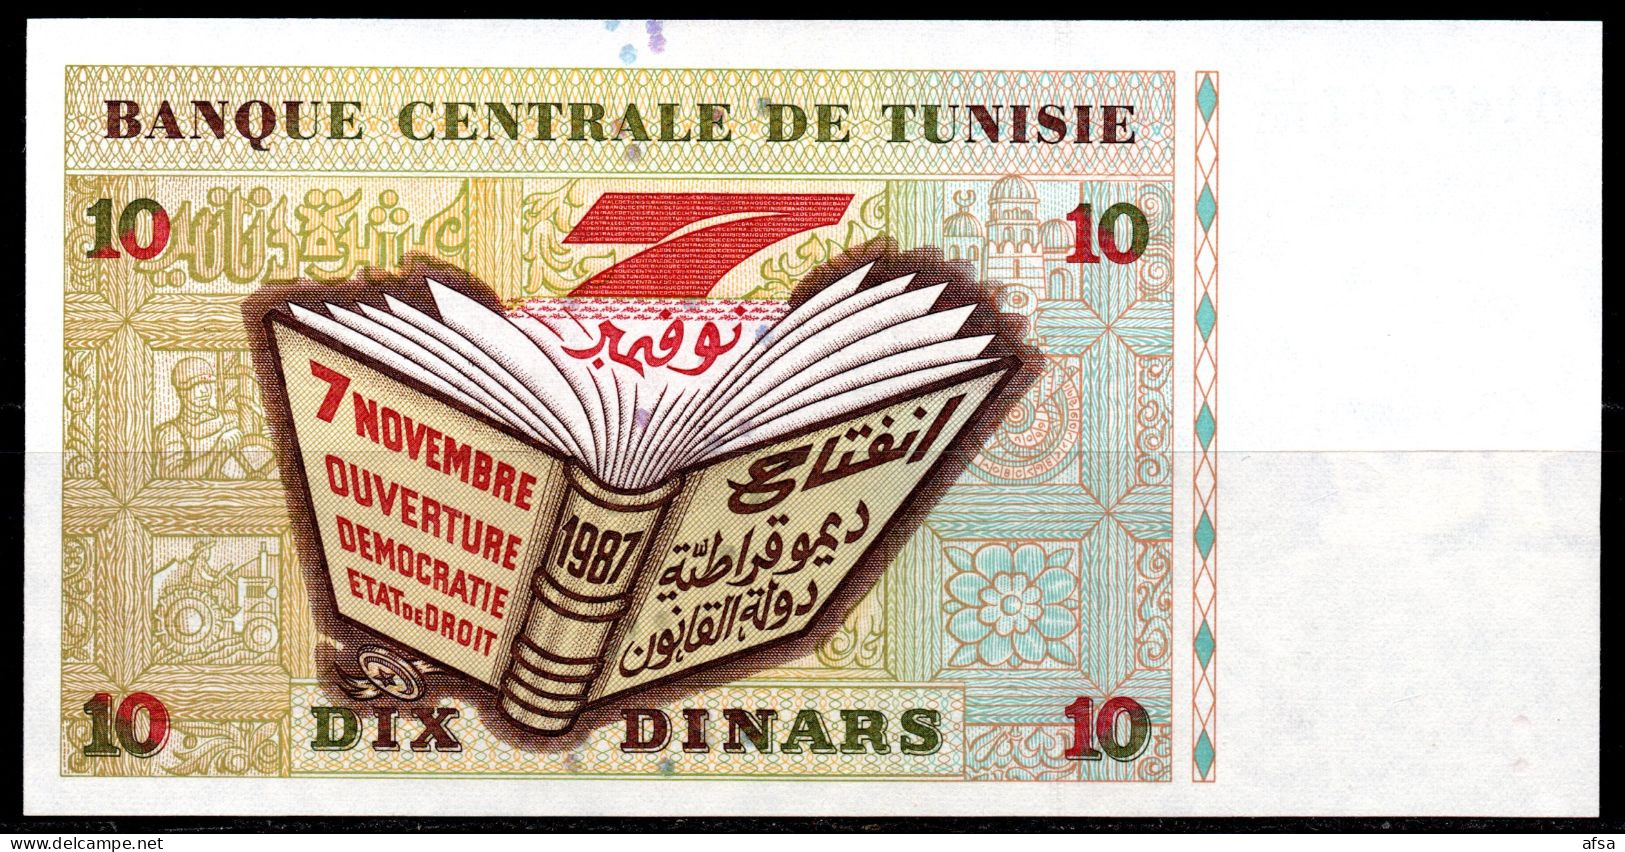 10-Dinars1994-P. 87A-Very Nice Serial N°-trés Beau N° De Série-UNC**-Neuf(2 Scans-2 Images) Envoi Gratuit -Free Shipping - Tunisie